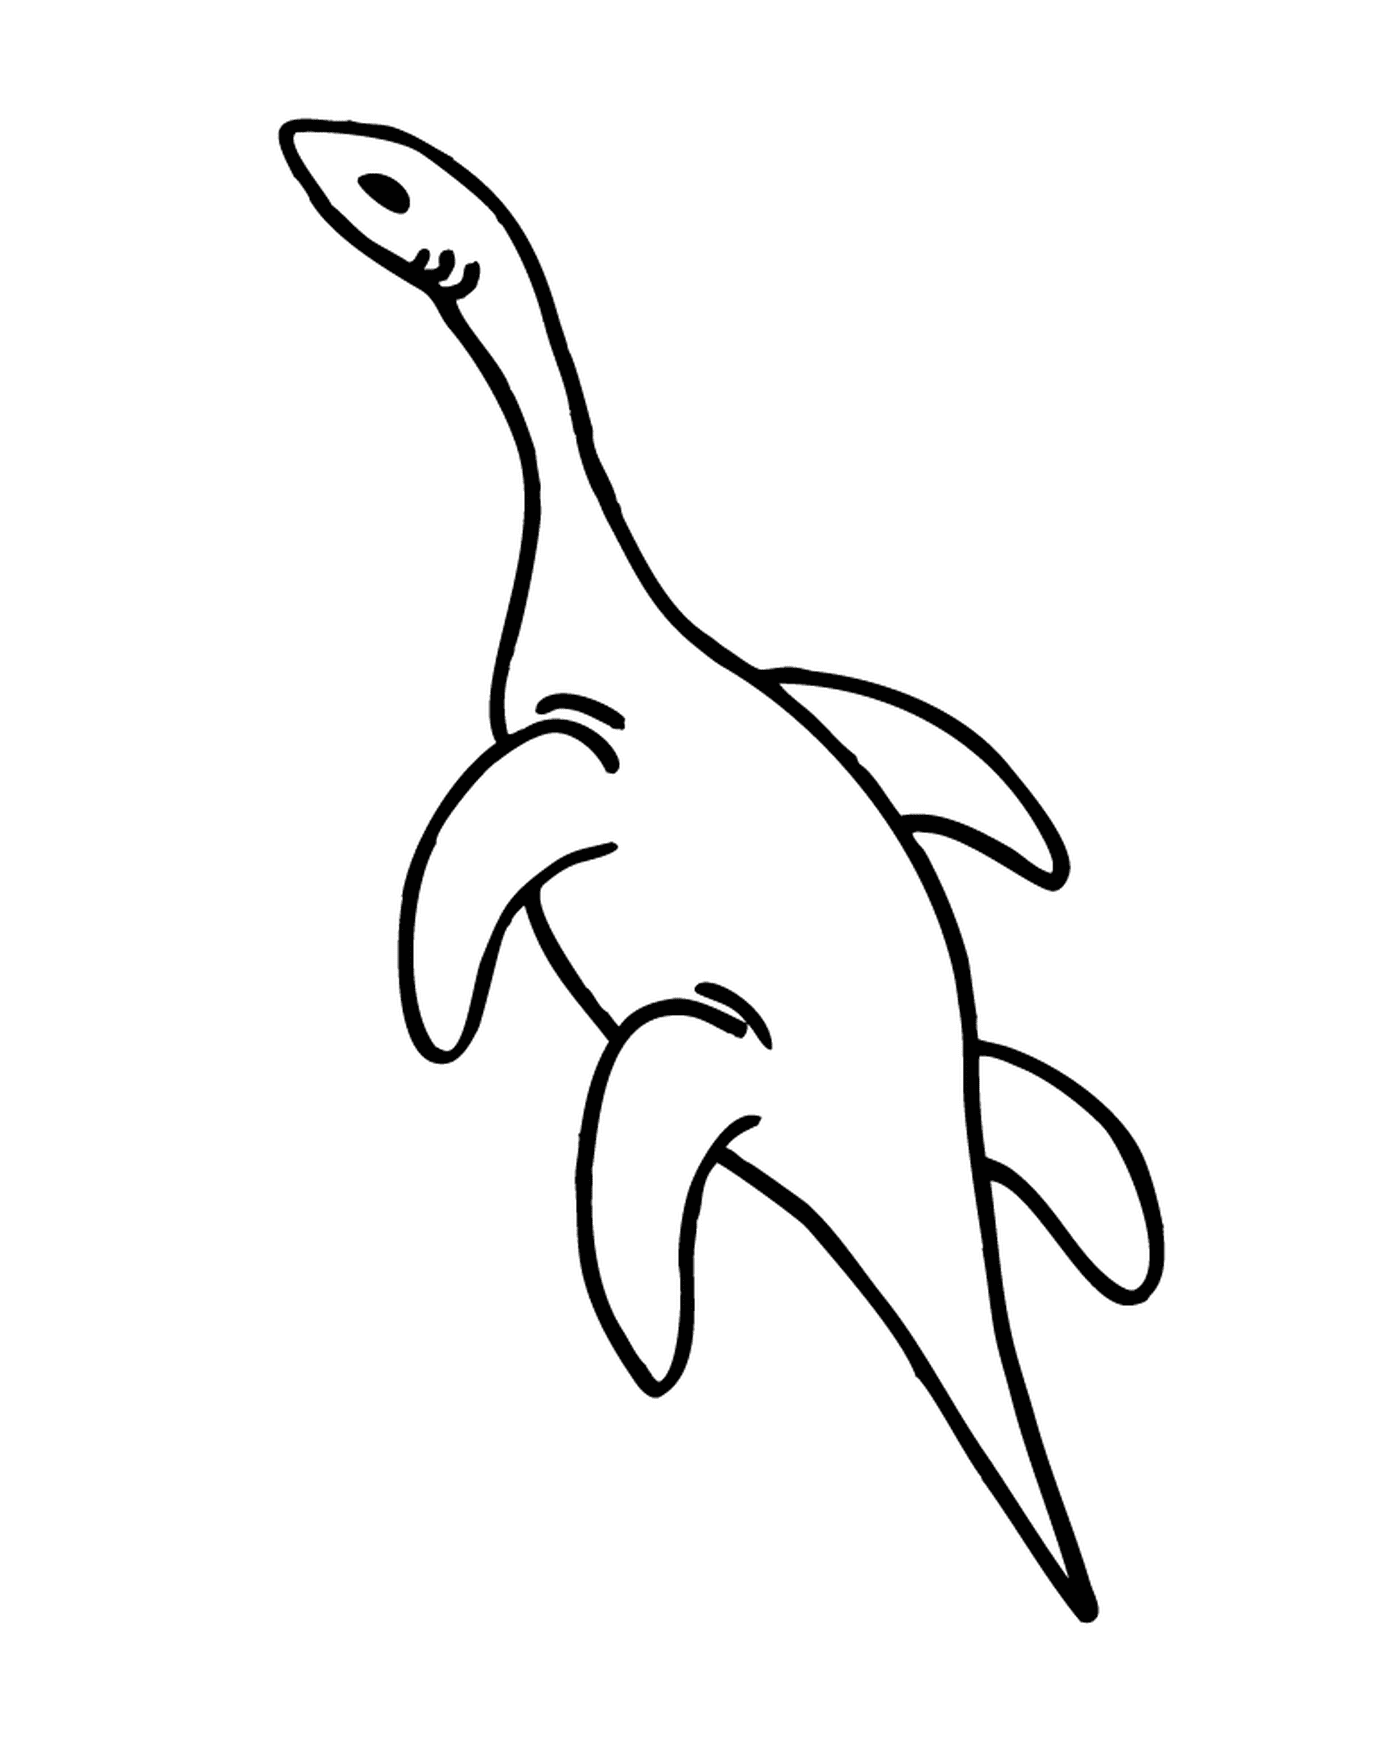  Um golfinho 